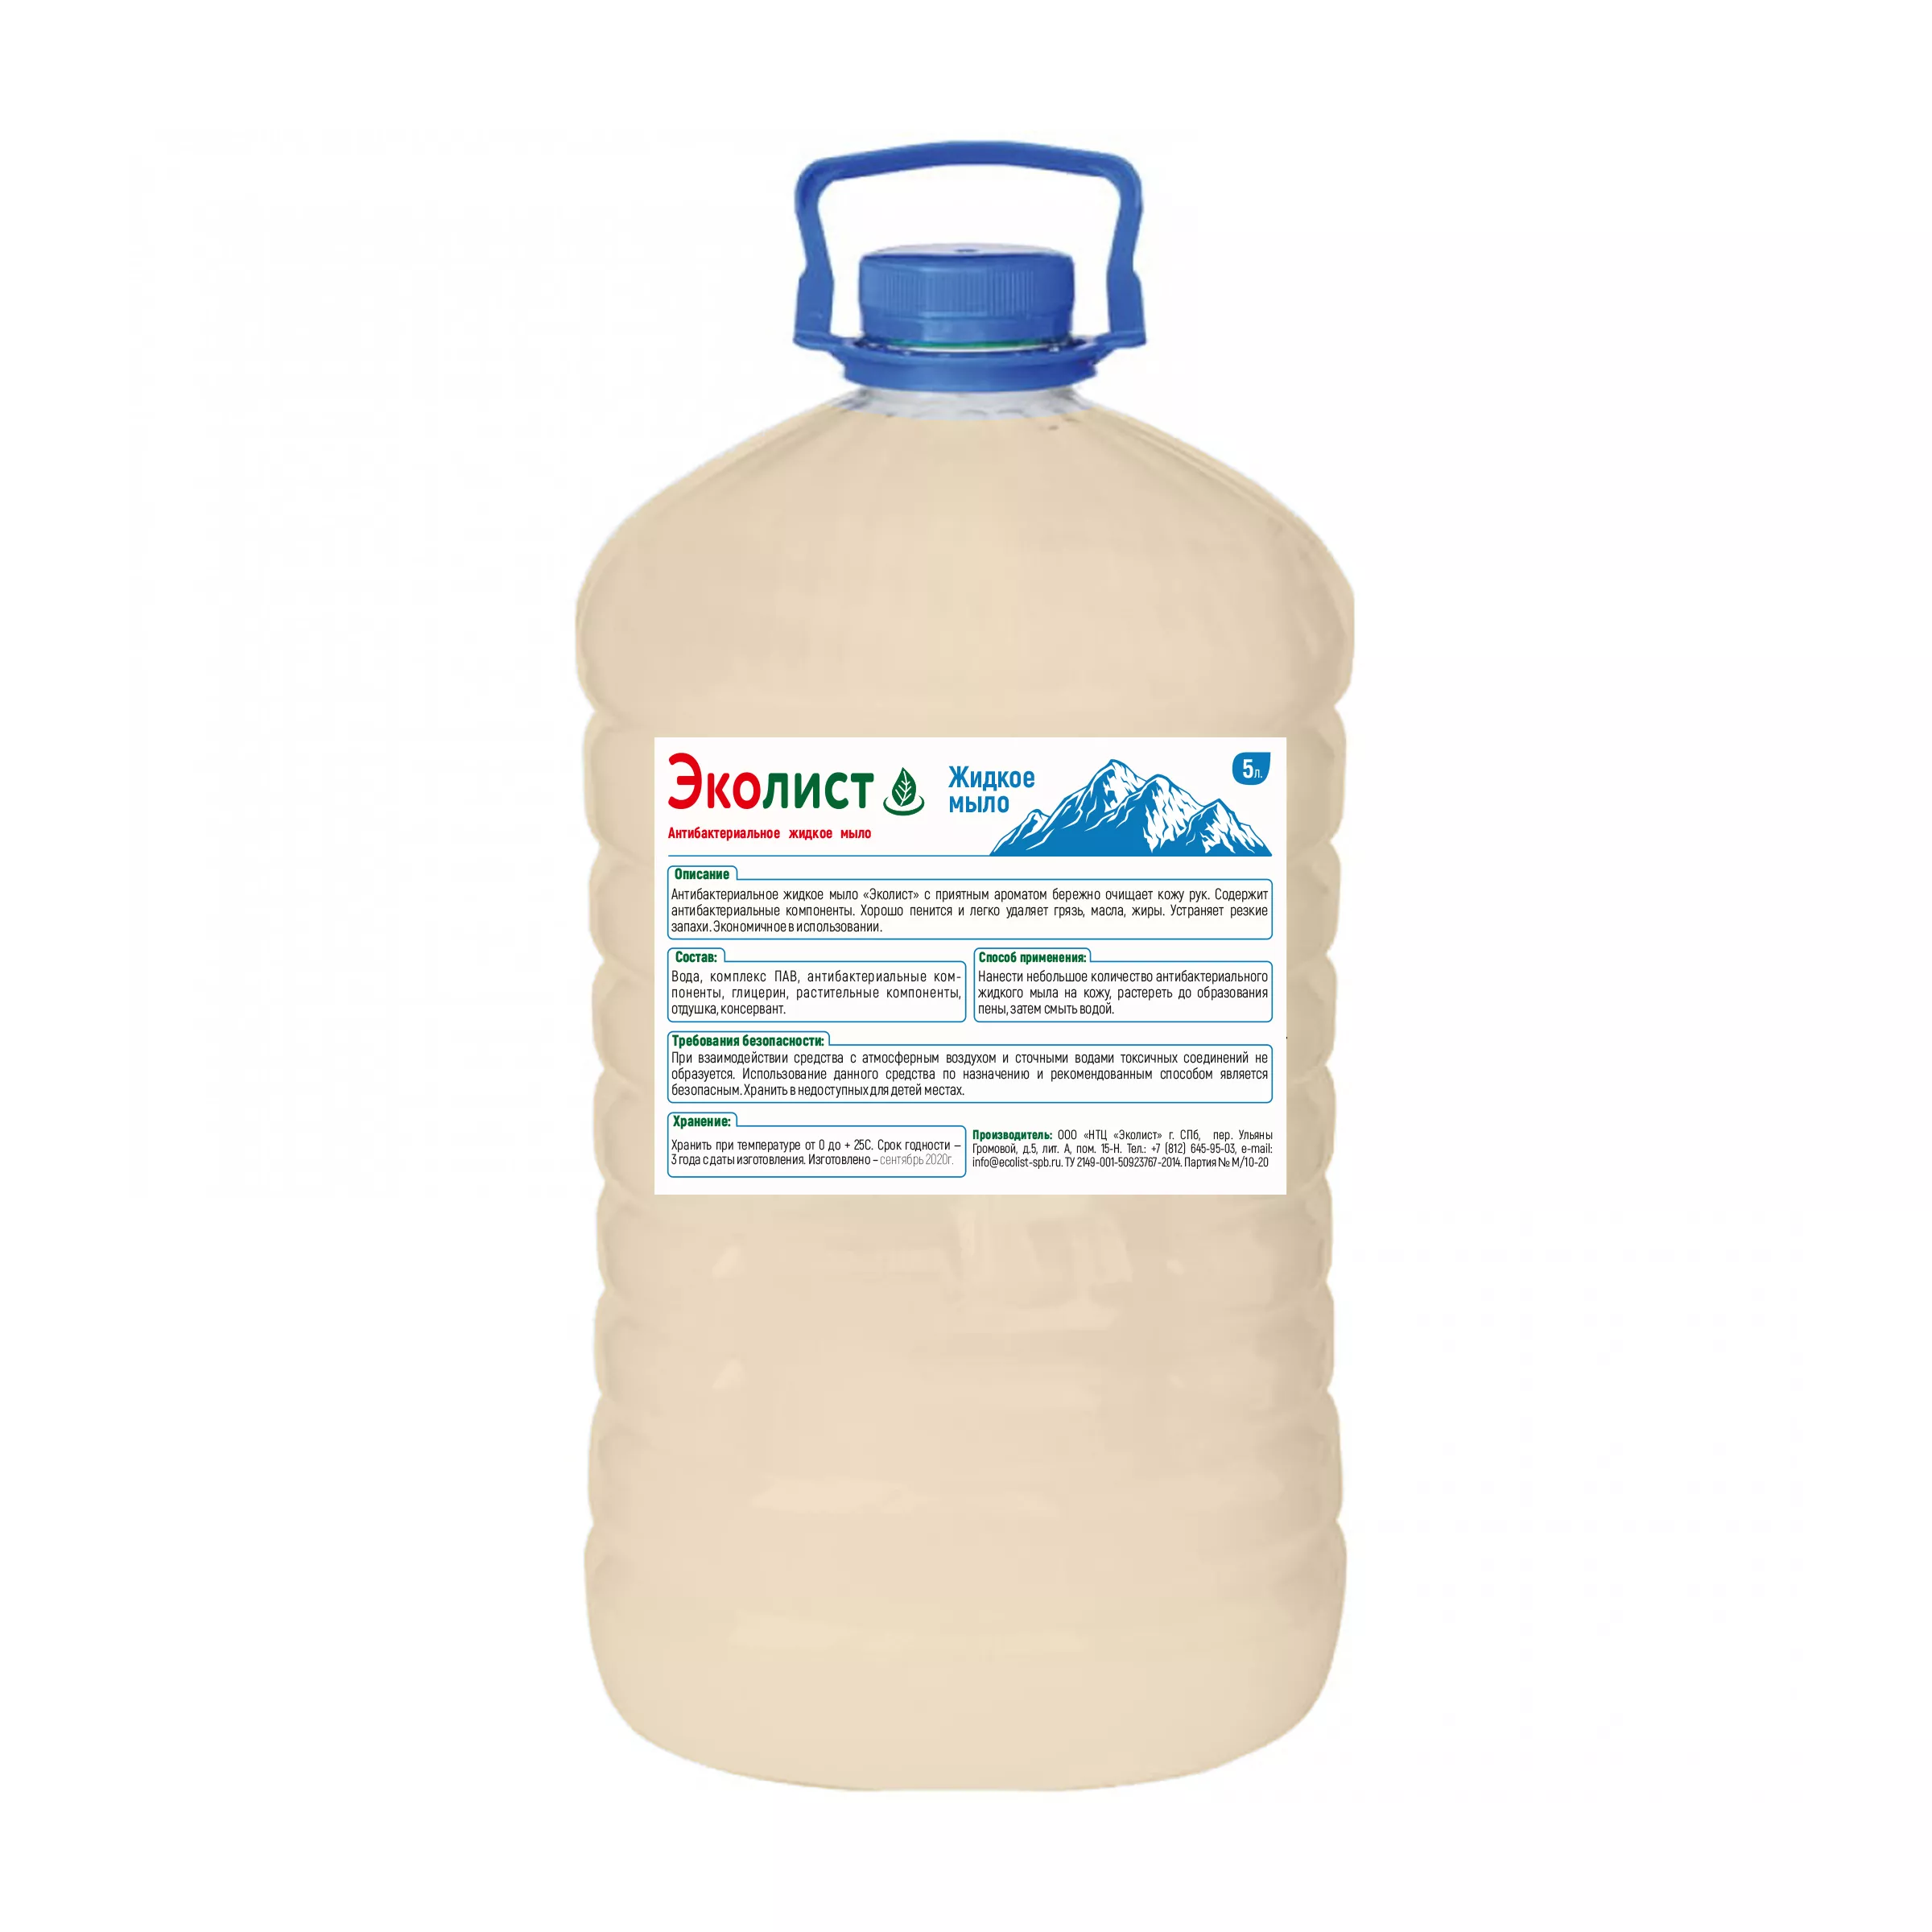 Жидкое мыло с антибактериальным эффектом Ecolist, 5л